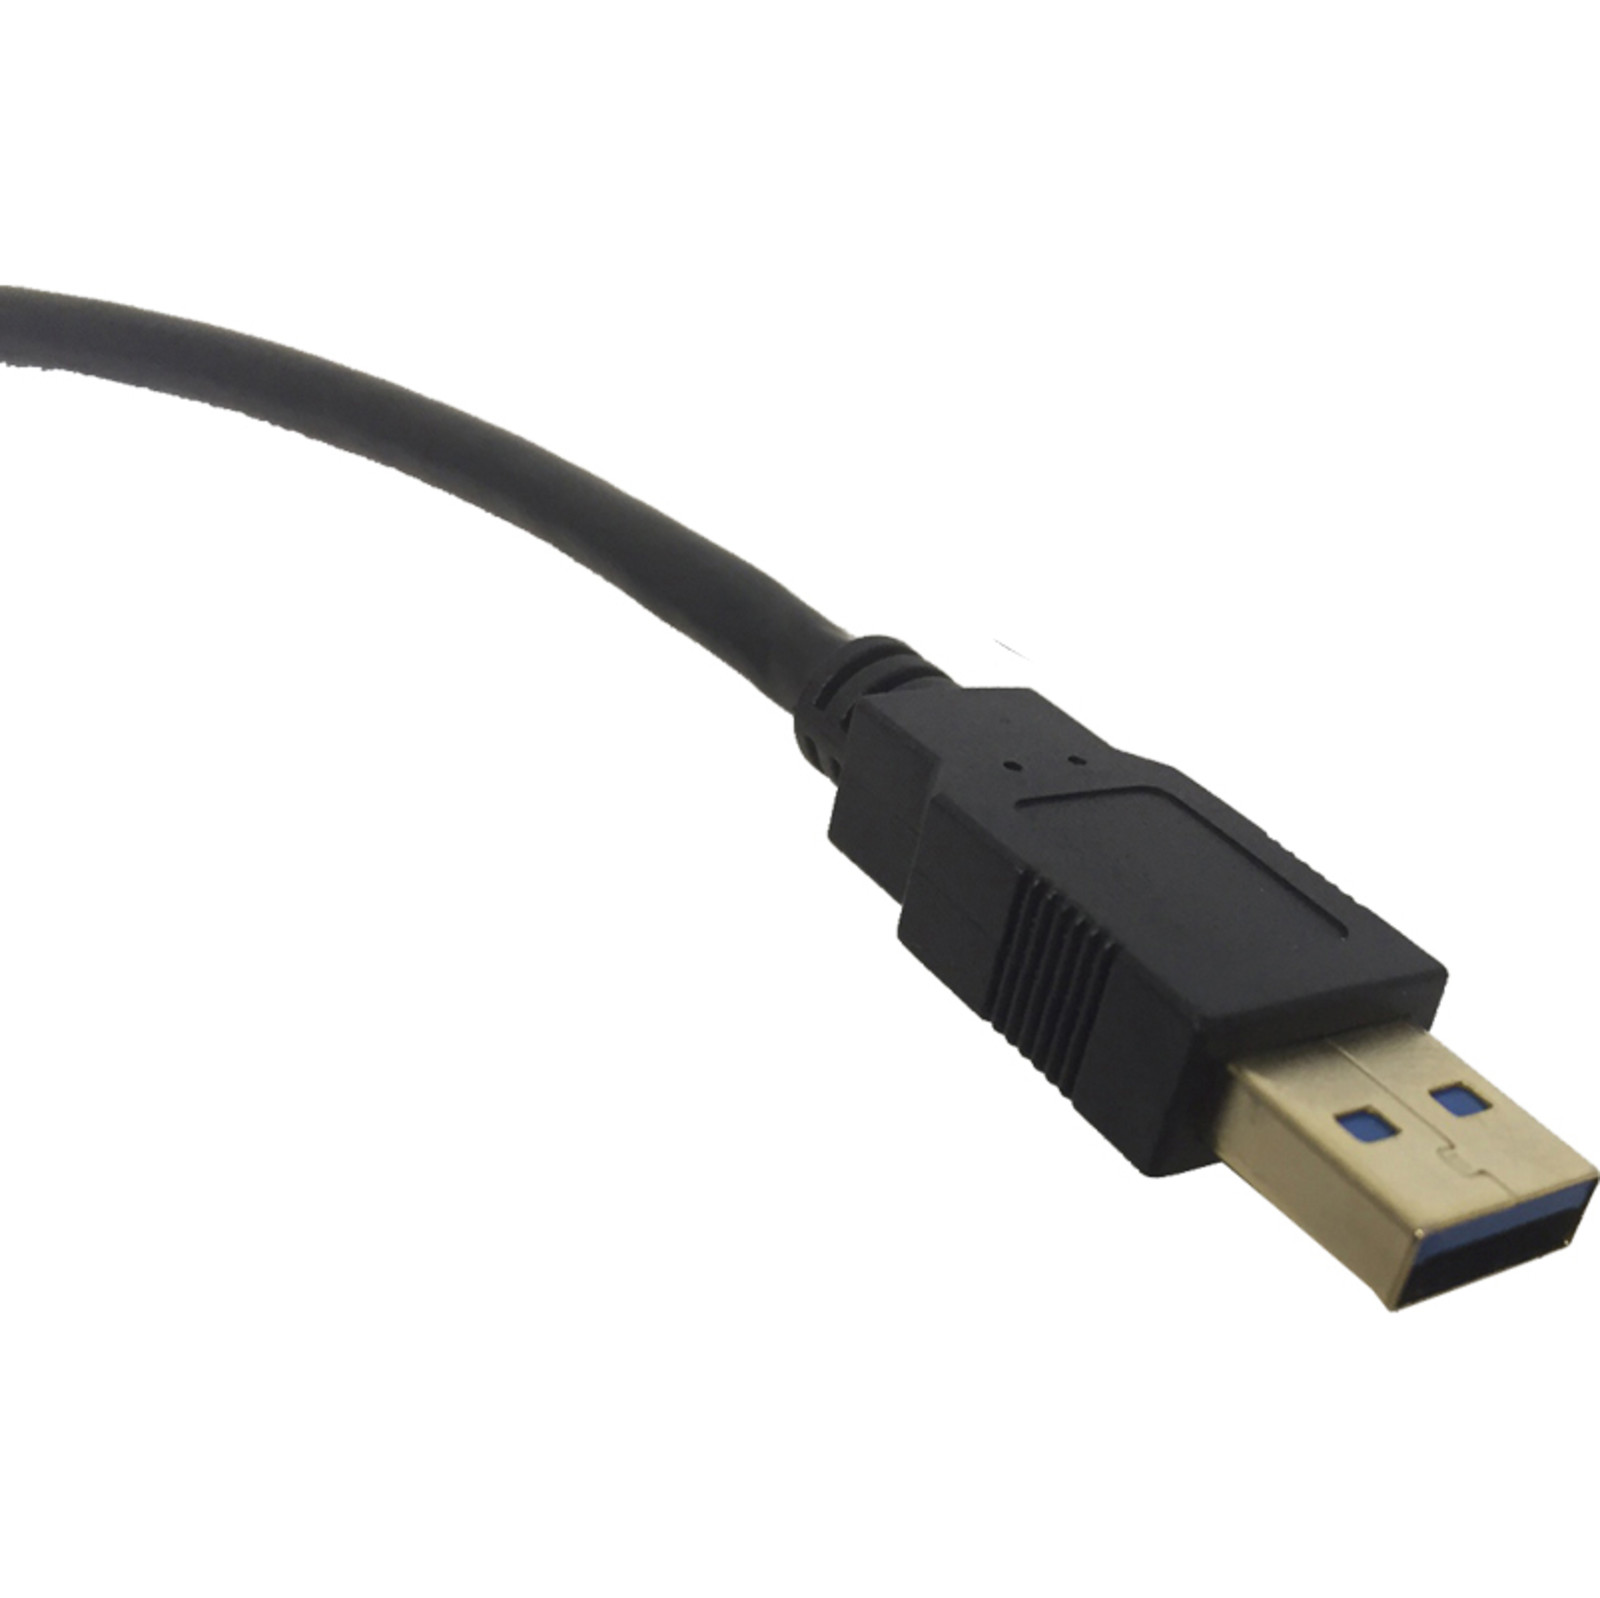 Excel câble USB 3.0 A mâle - A mâle - noir - 5 m